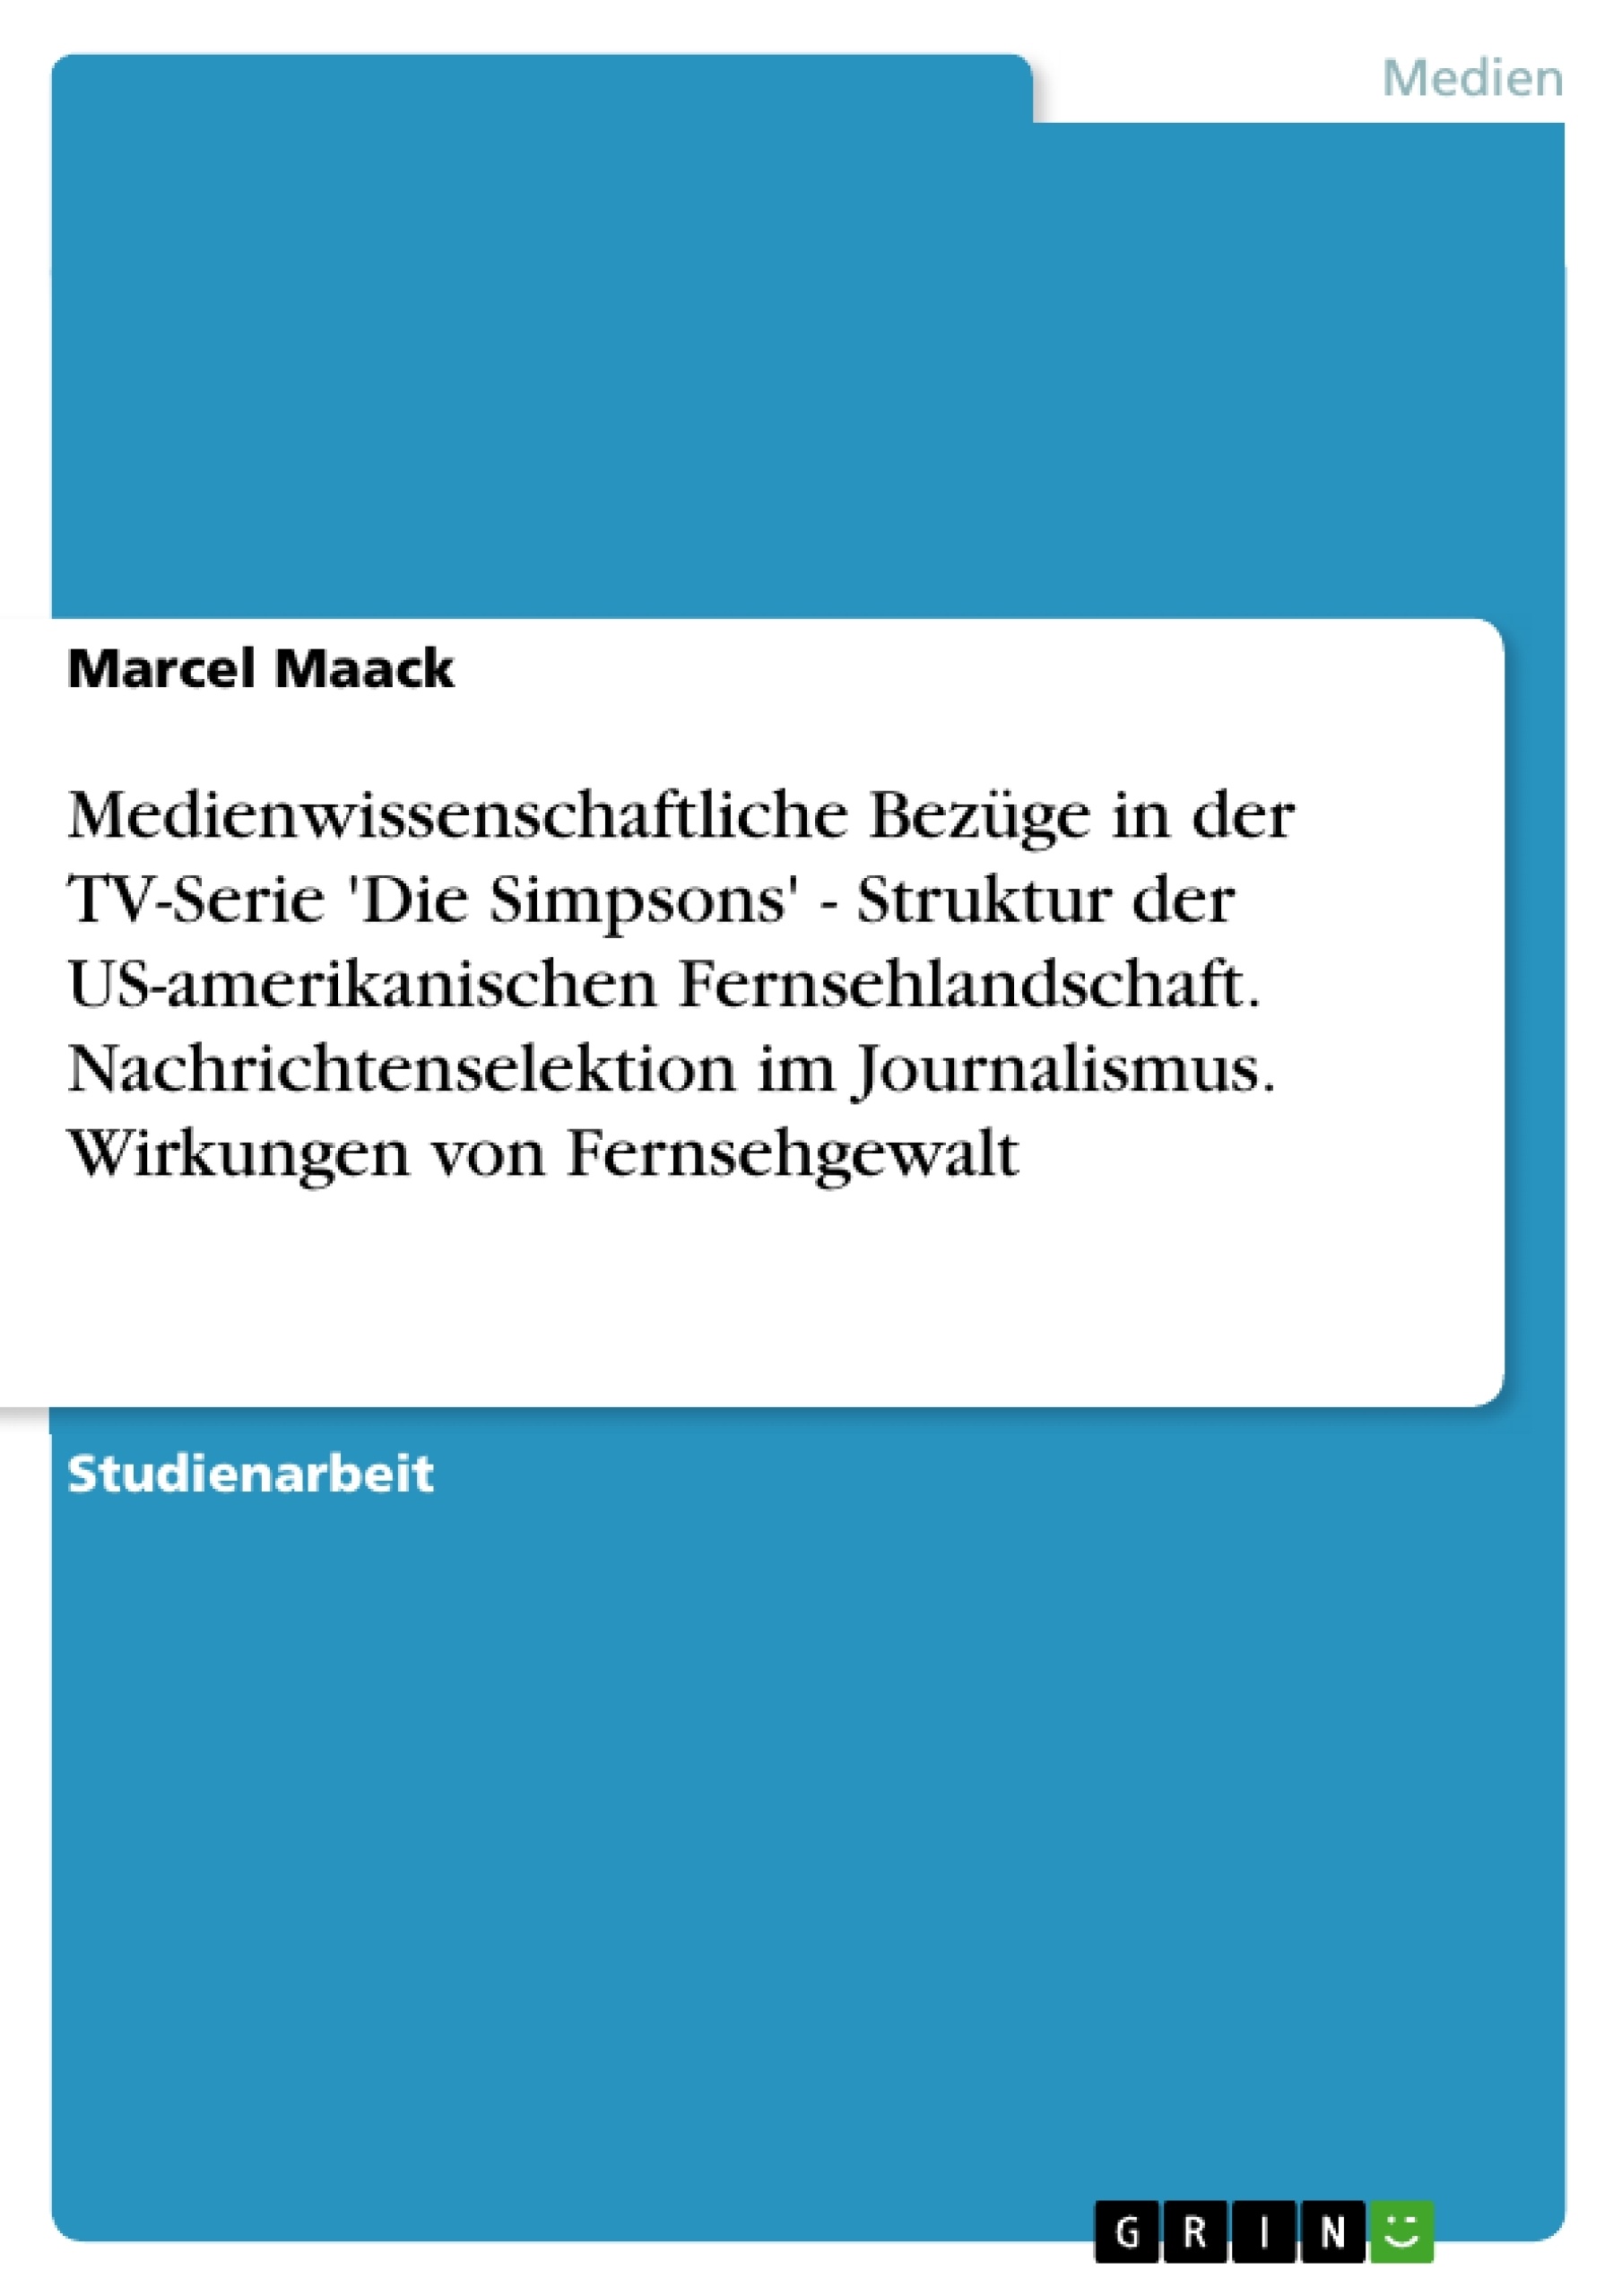 Titel: Medienwissenschaftliche Bezüge in der TV-Serie 'Die Simpsons' - Struktur der US-amerikanischen Fernsehlandschaft. Nachrichtenselektion im Journalismus. Wirkungen von Fernsehgewalt